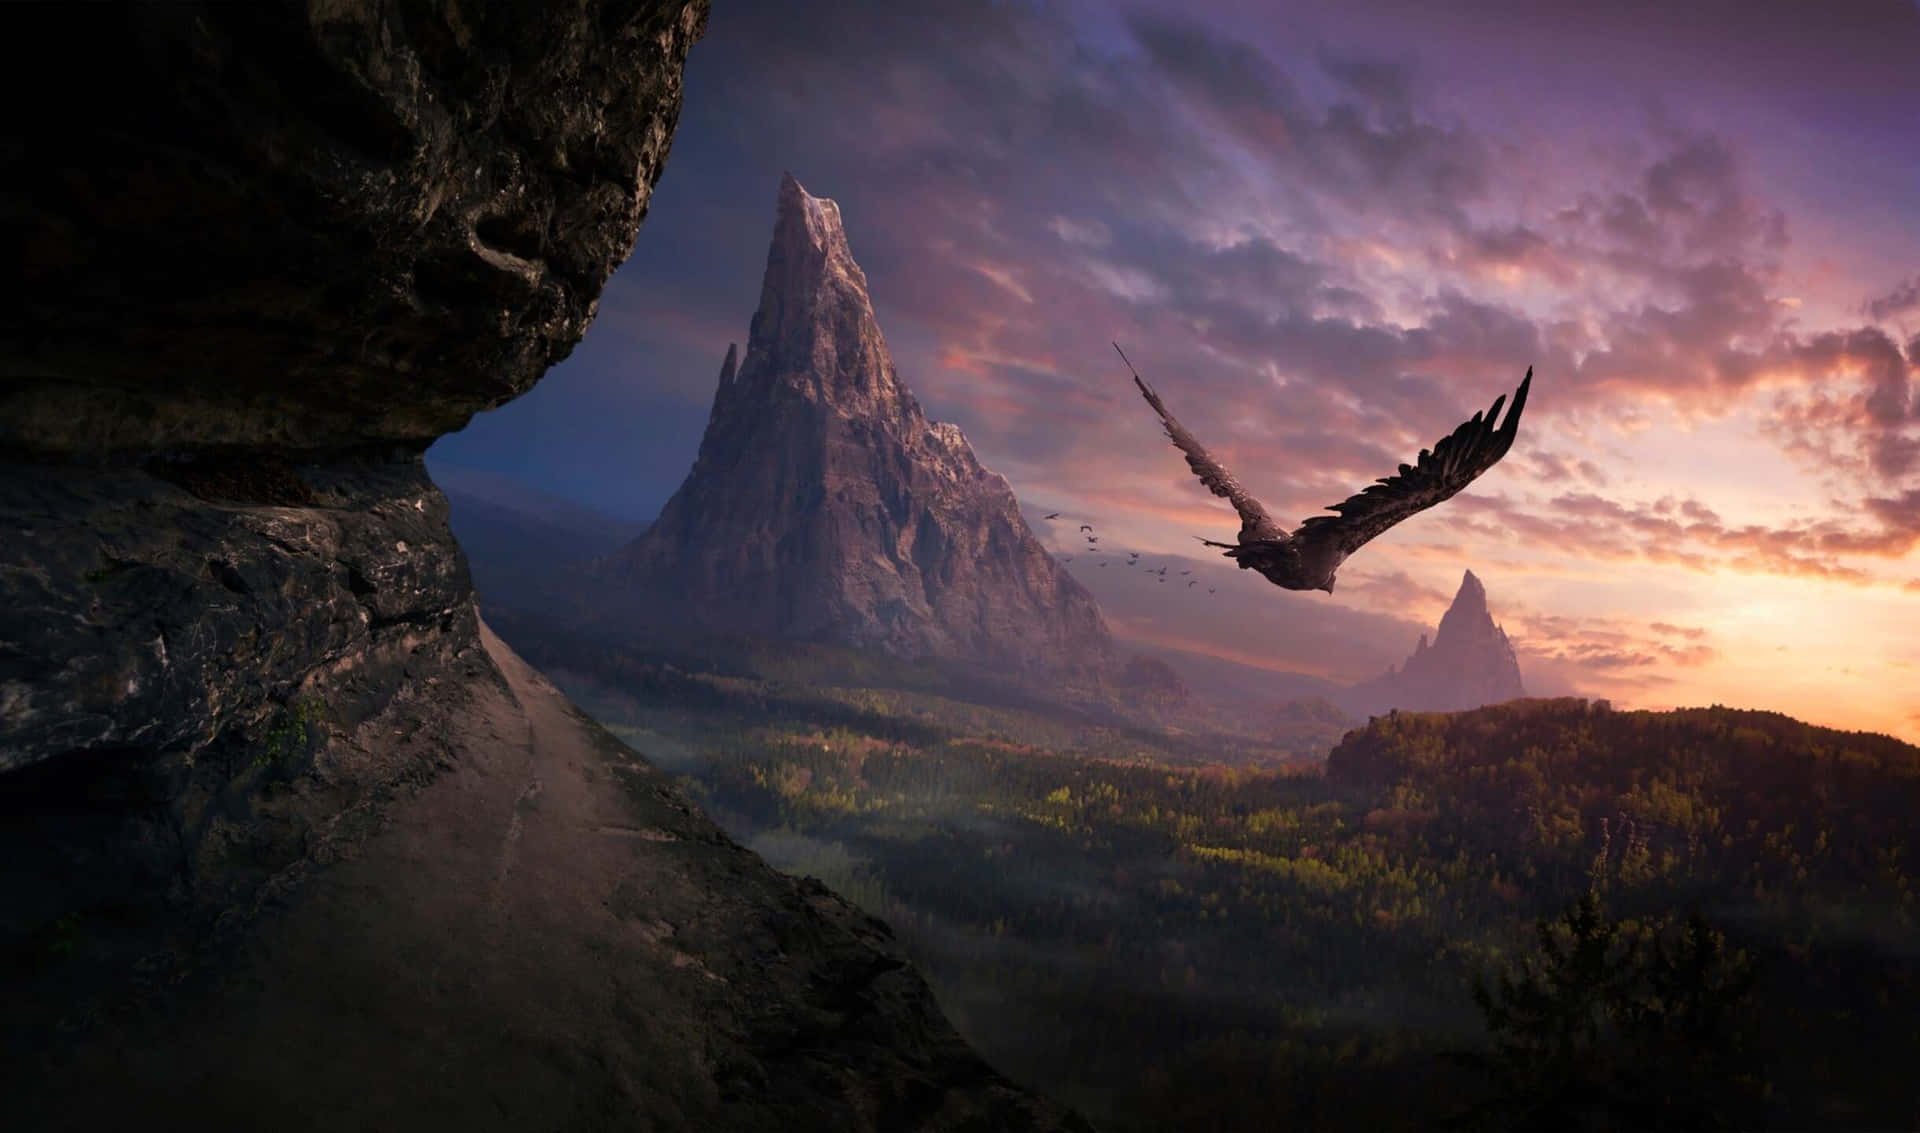 a bird flies over a mountain at sunset